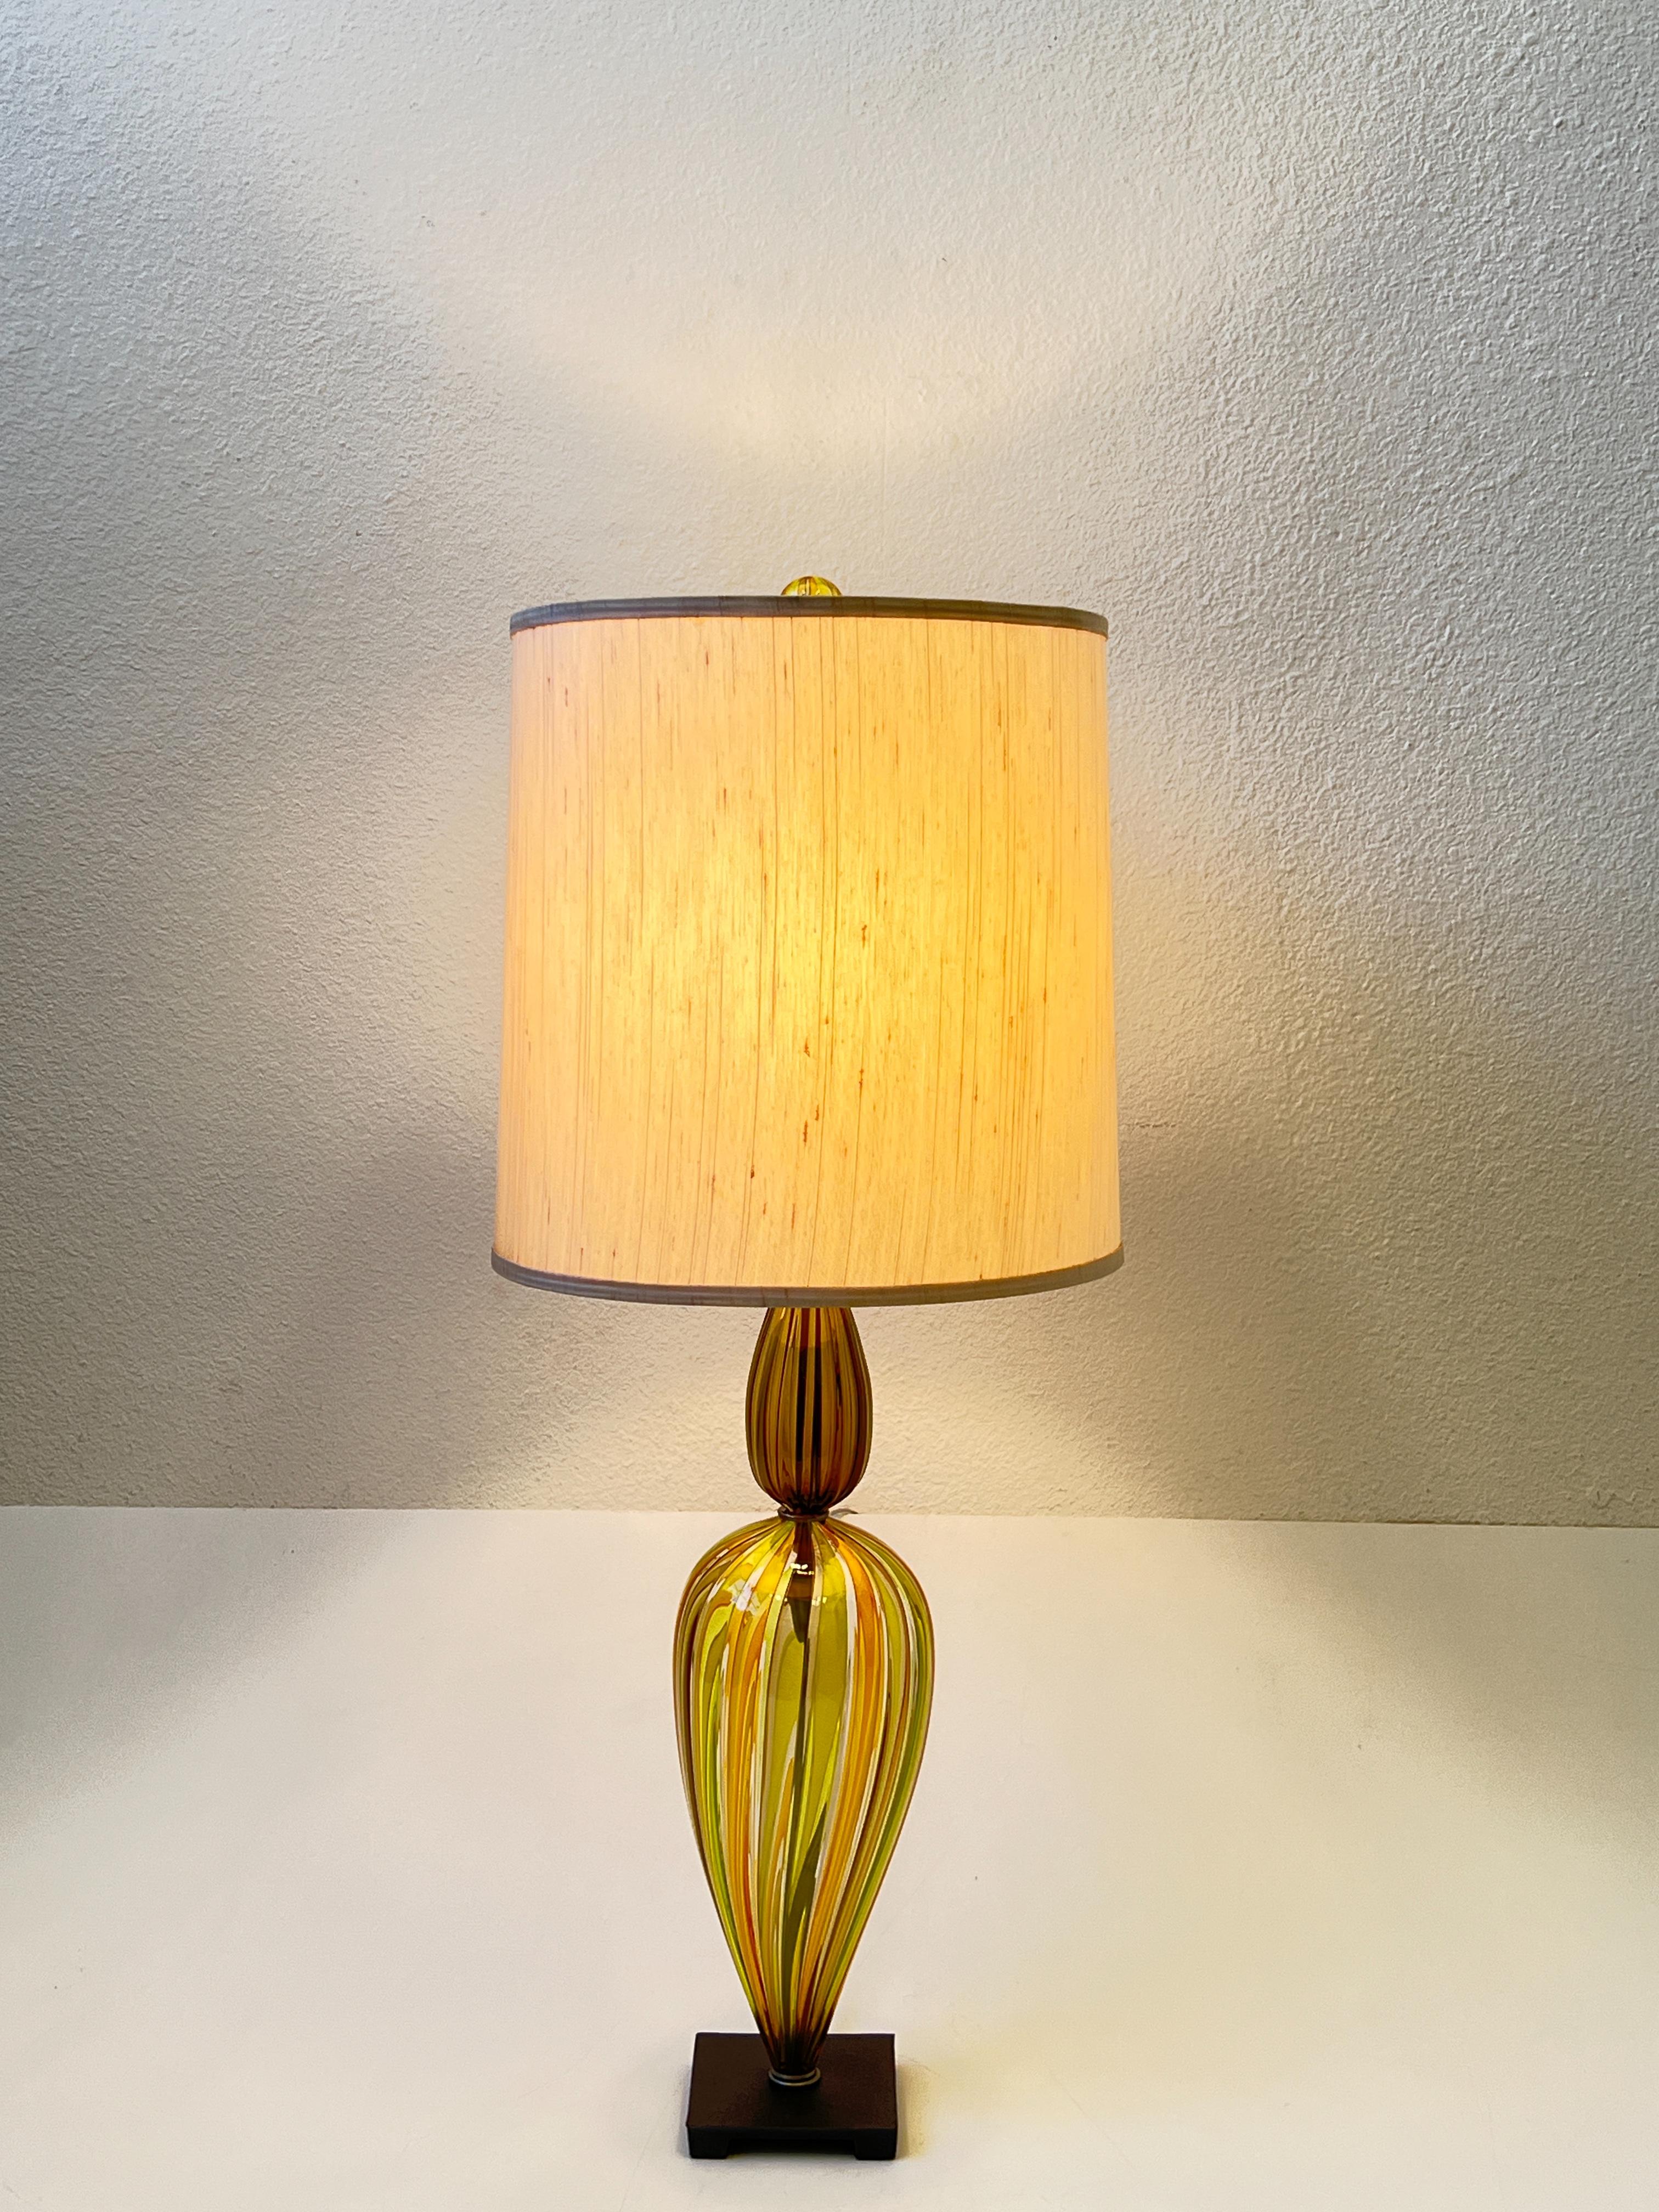 Magnifique lampe de table en verre Murano de Venini datant des années 1960. 
La partie inférieure de la lampe et le fleuron sont en verre de Murano à rayures jaunes et vertes, la partie supérieure est en verre de Murano fumé, avec des ferrures en